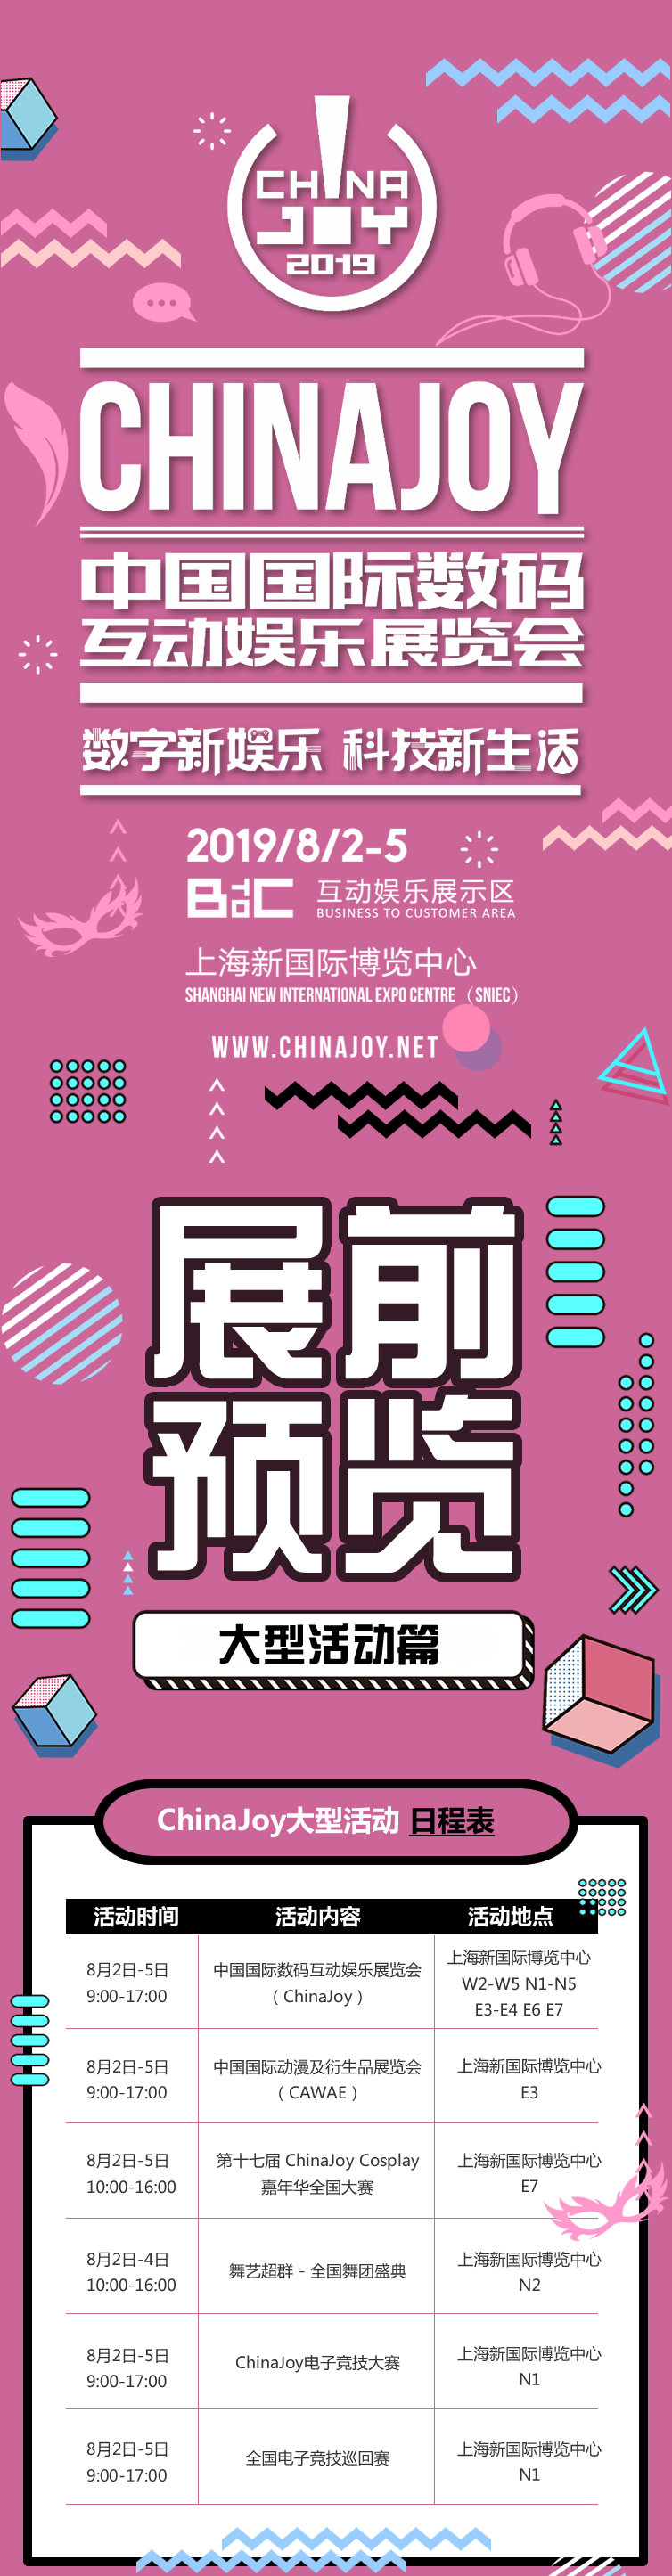 2019年第十七届ChinaJoy展前预览(大型活动篇)正式发布!